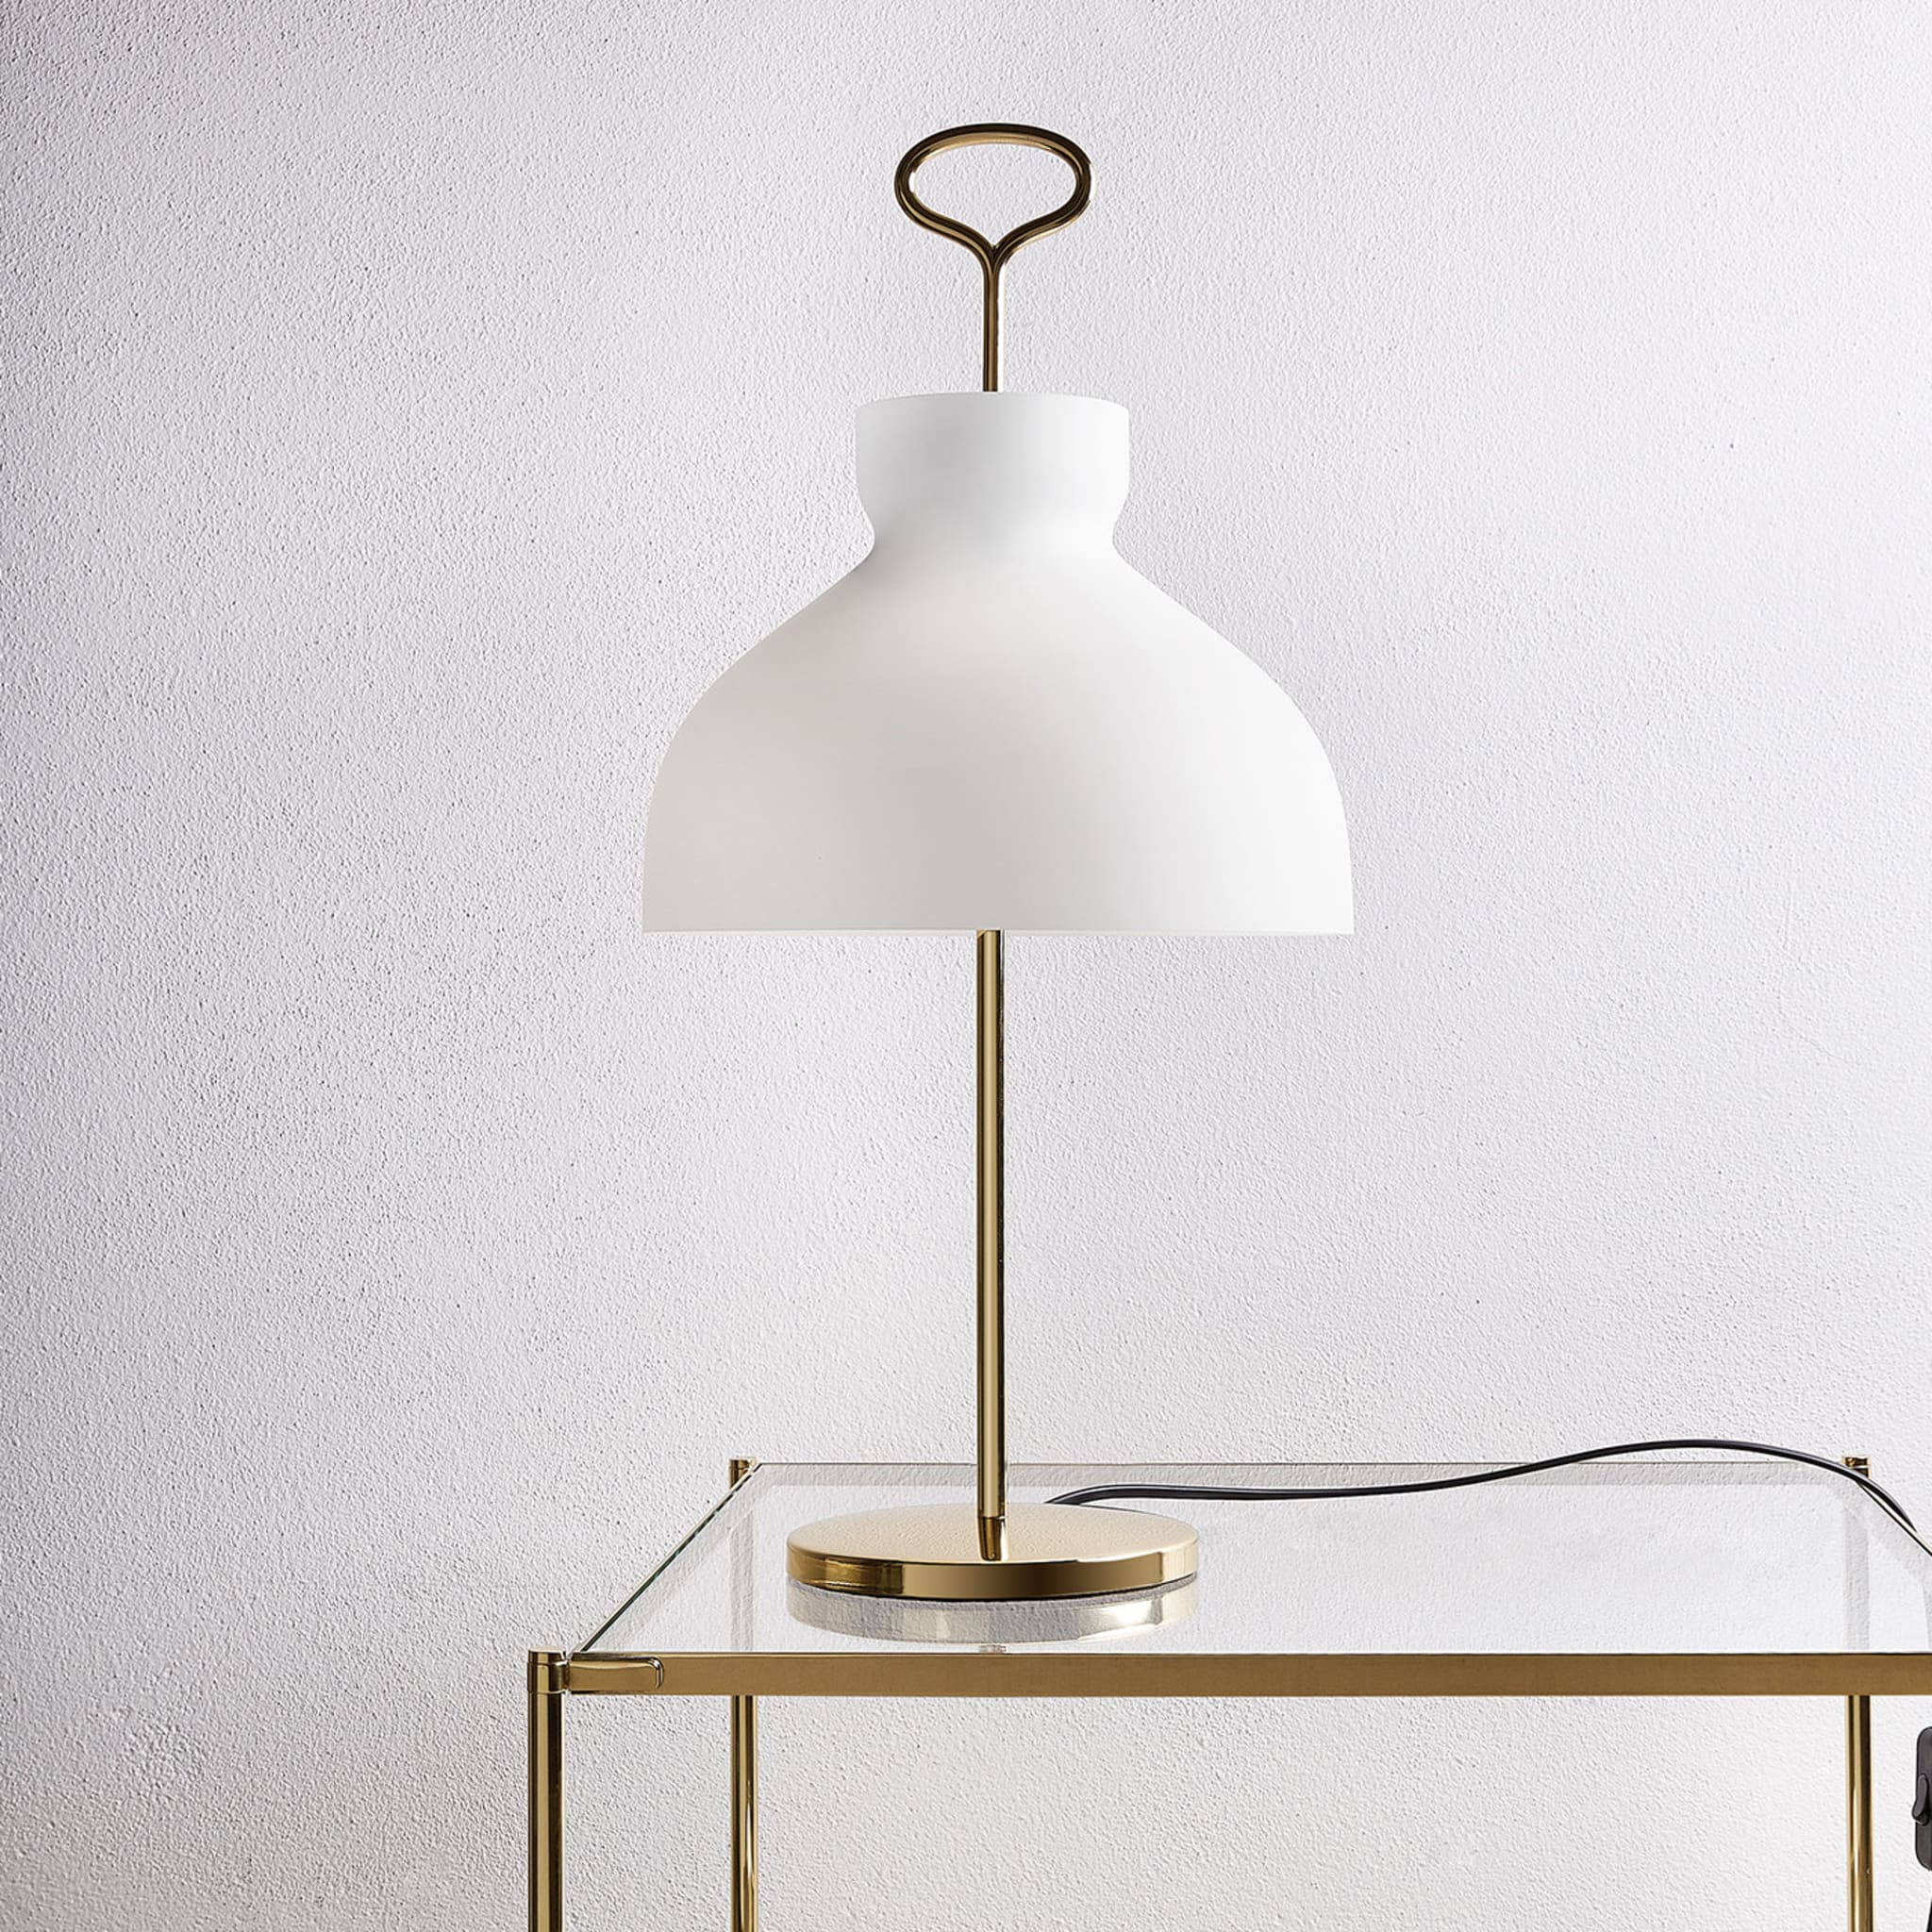 Arenzano Table Lamp by Ignazio Gardella - Alternative view 2